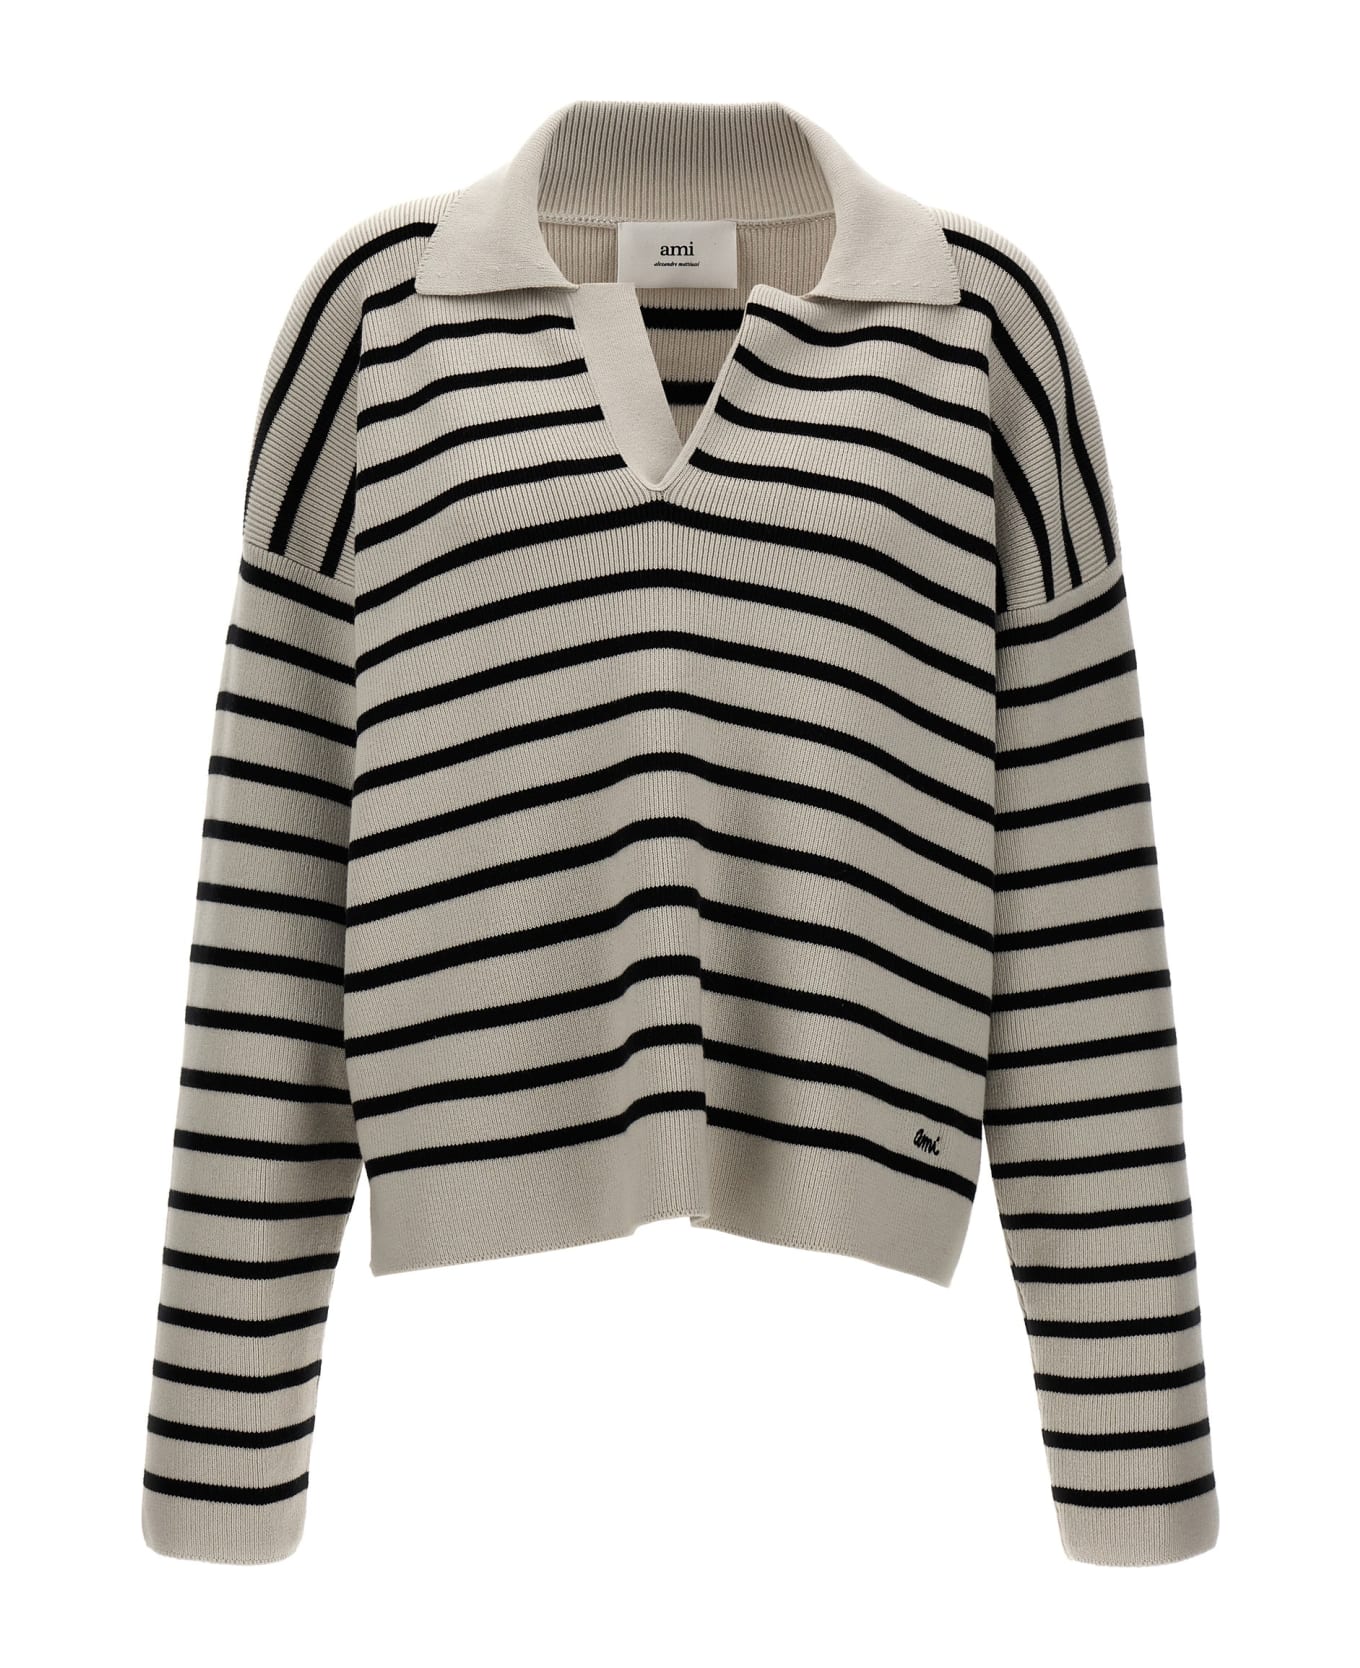 Ami Alexandre Mattiussi Striped Polo Sweater - White/Black